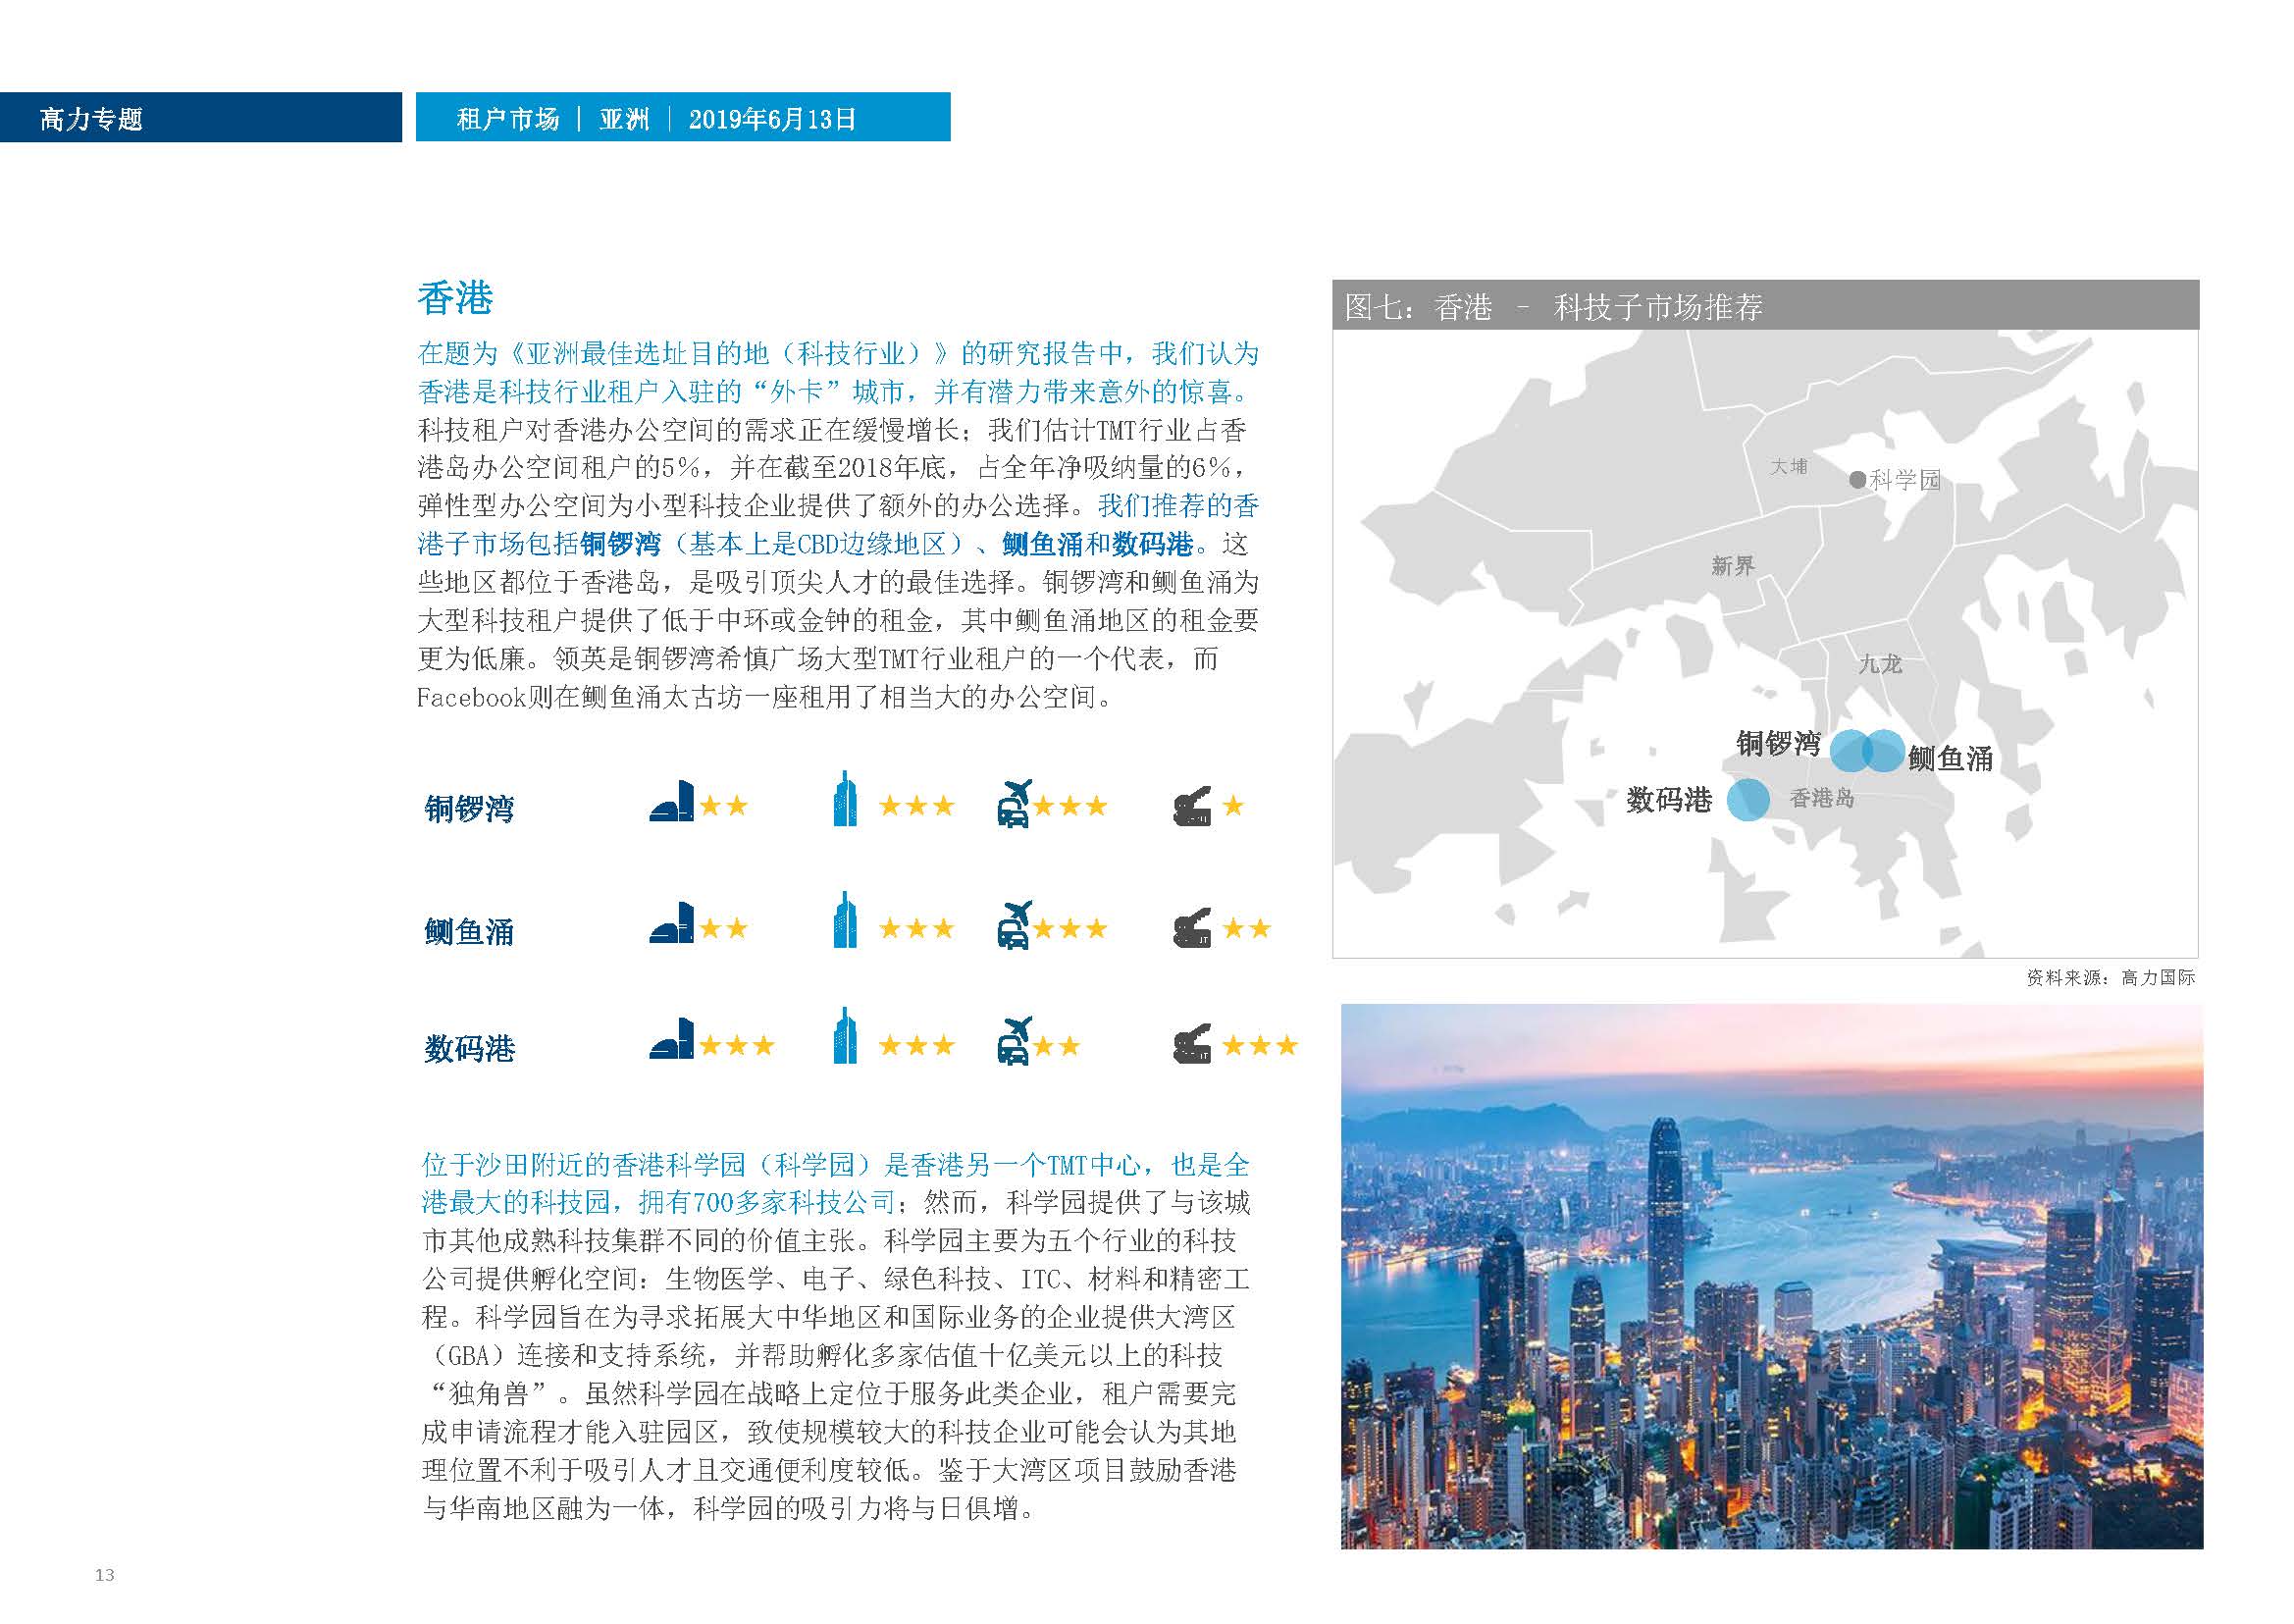 高力国际：科技明珠—为技术、媒体和电信行业租户甄别亚洲城市中最具吸引力的子市场(18页)_页面_13.jpg